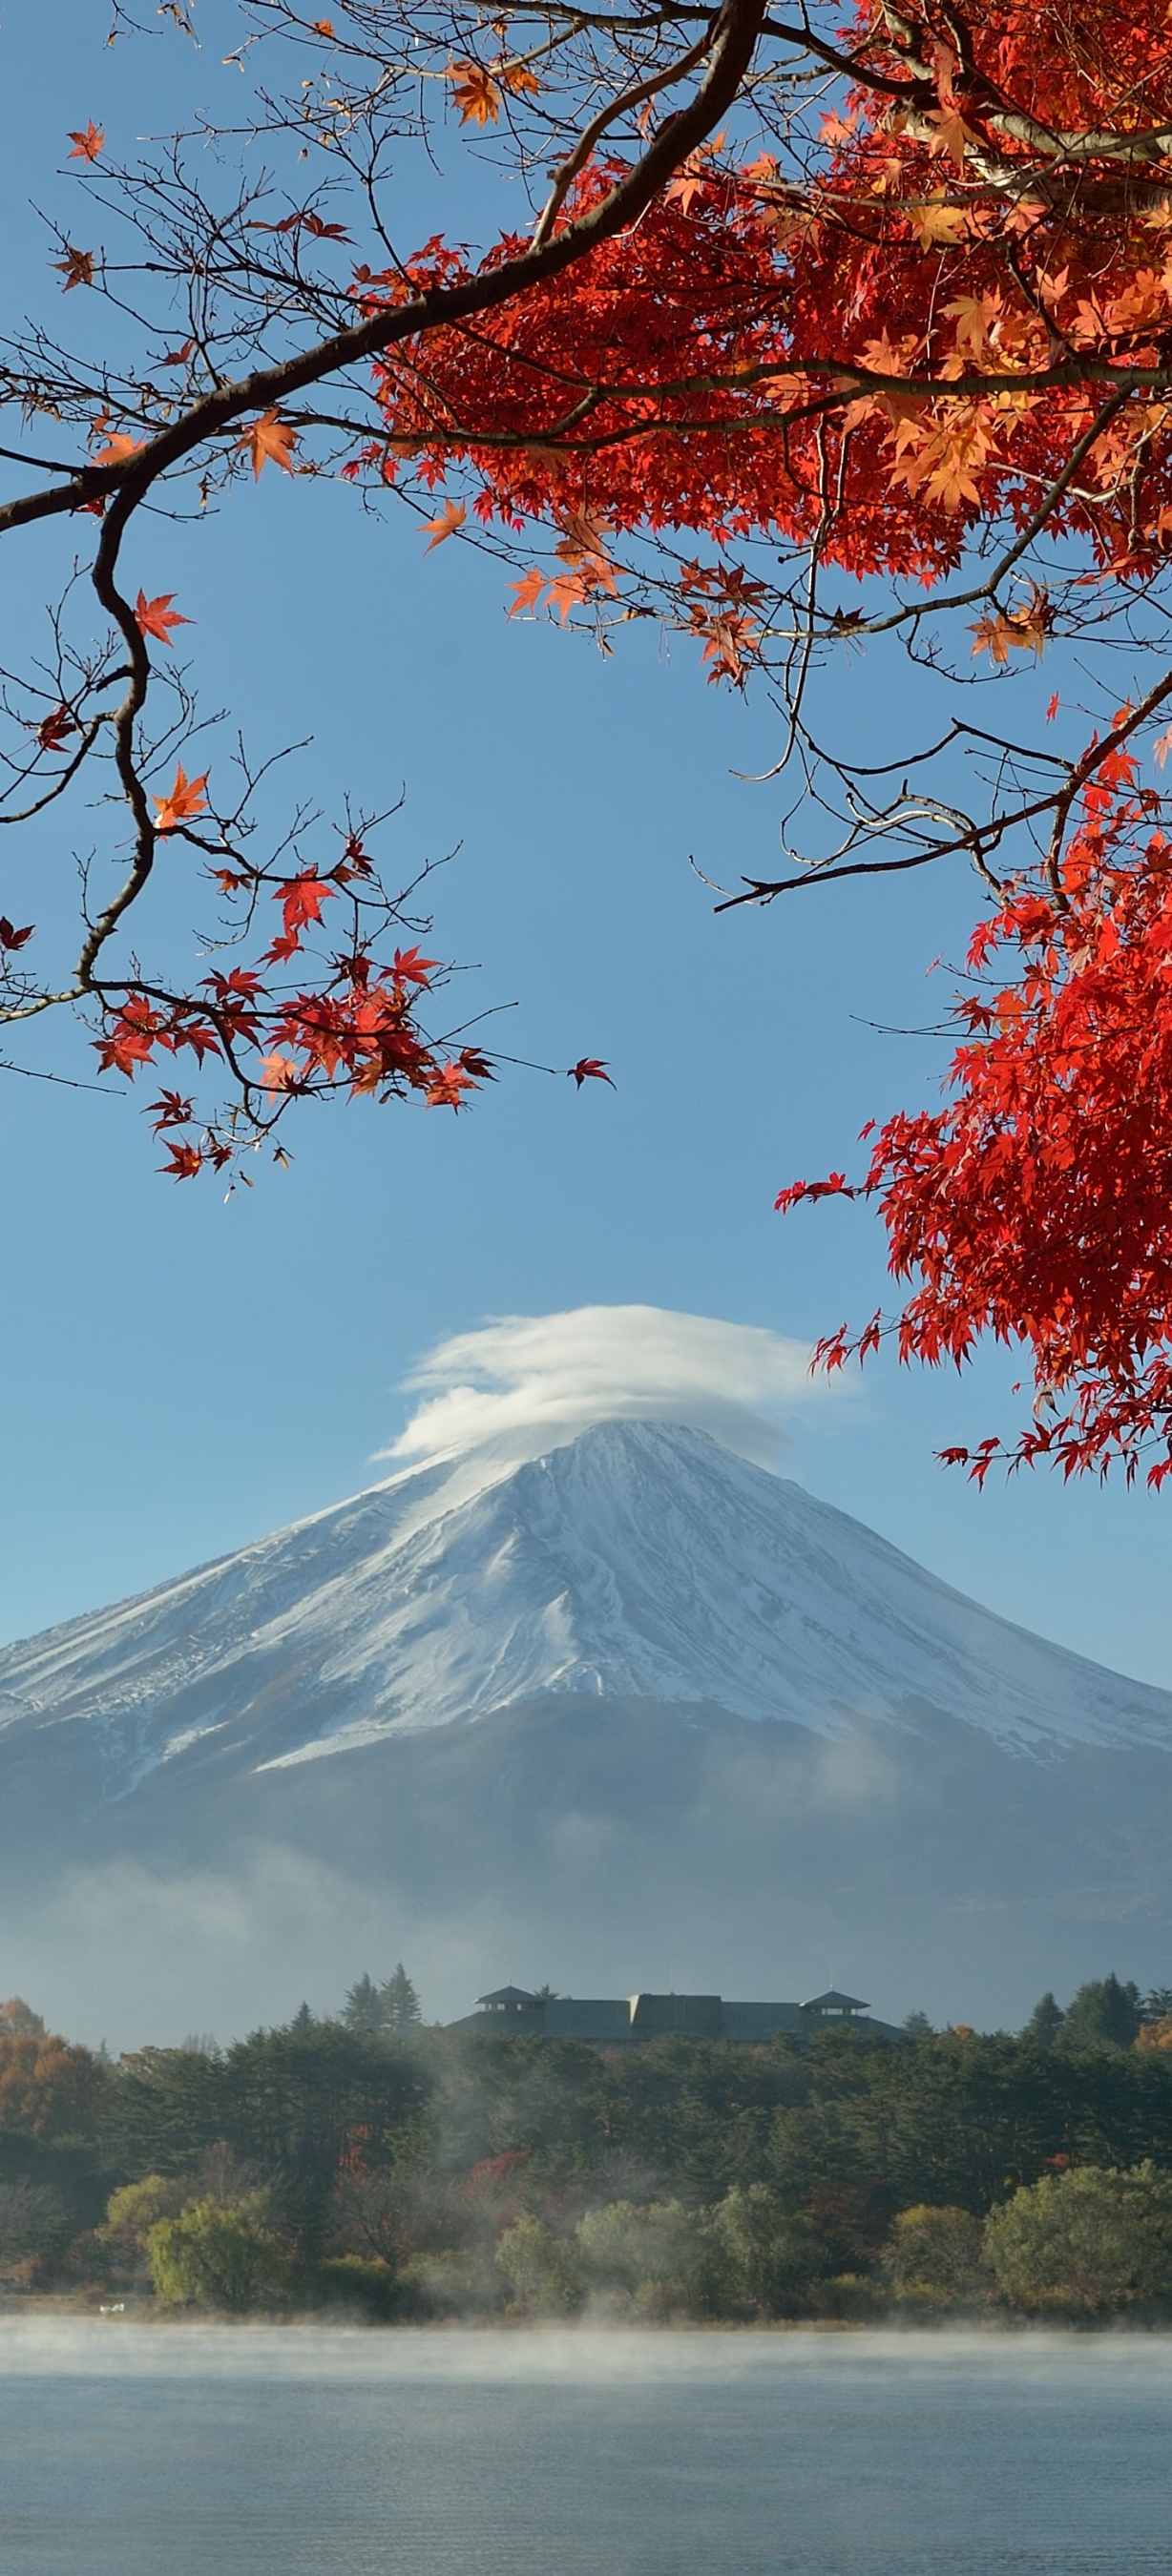 Скачать картинку Природа, Осень, Япония, Вулкан, Падать, Гора Фудзи, Вулканы, Земля/природа в телефон бесплатно.